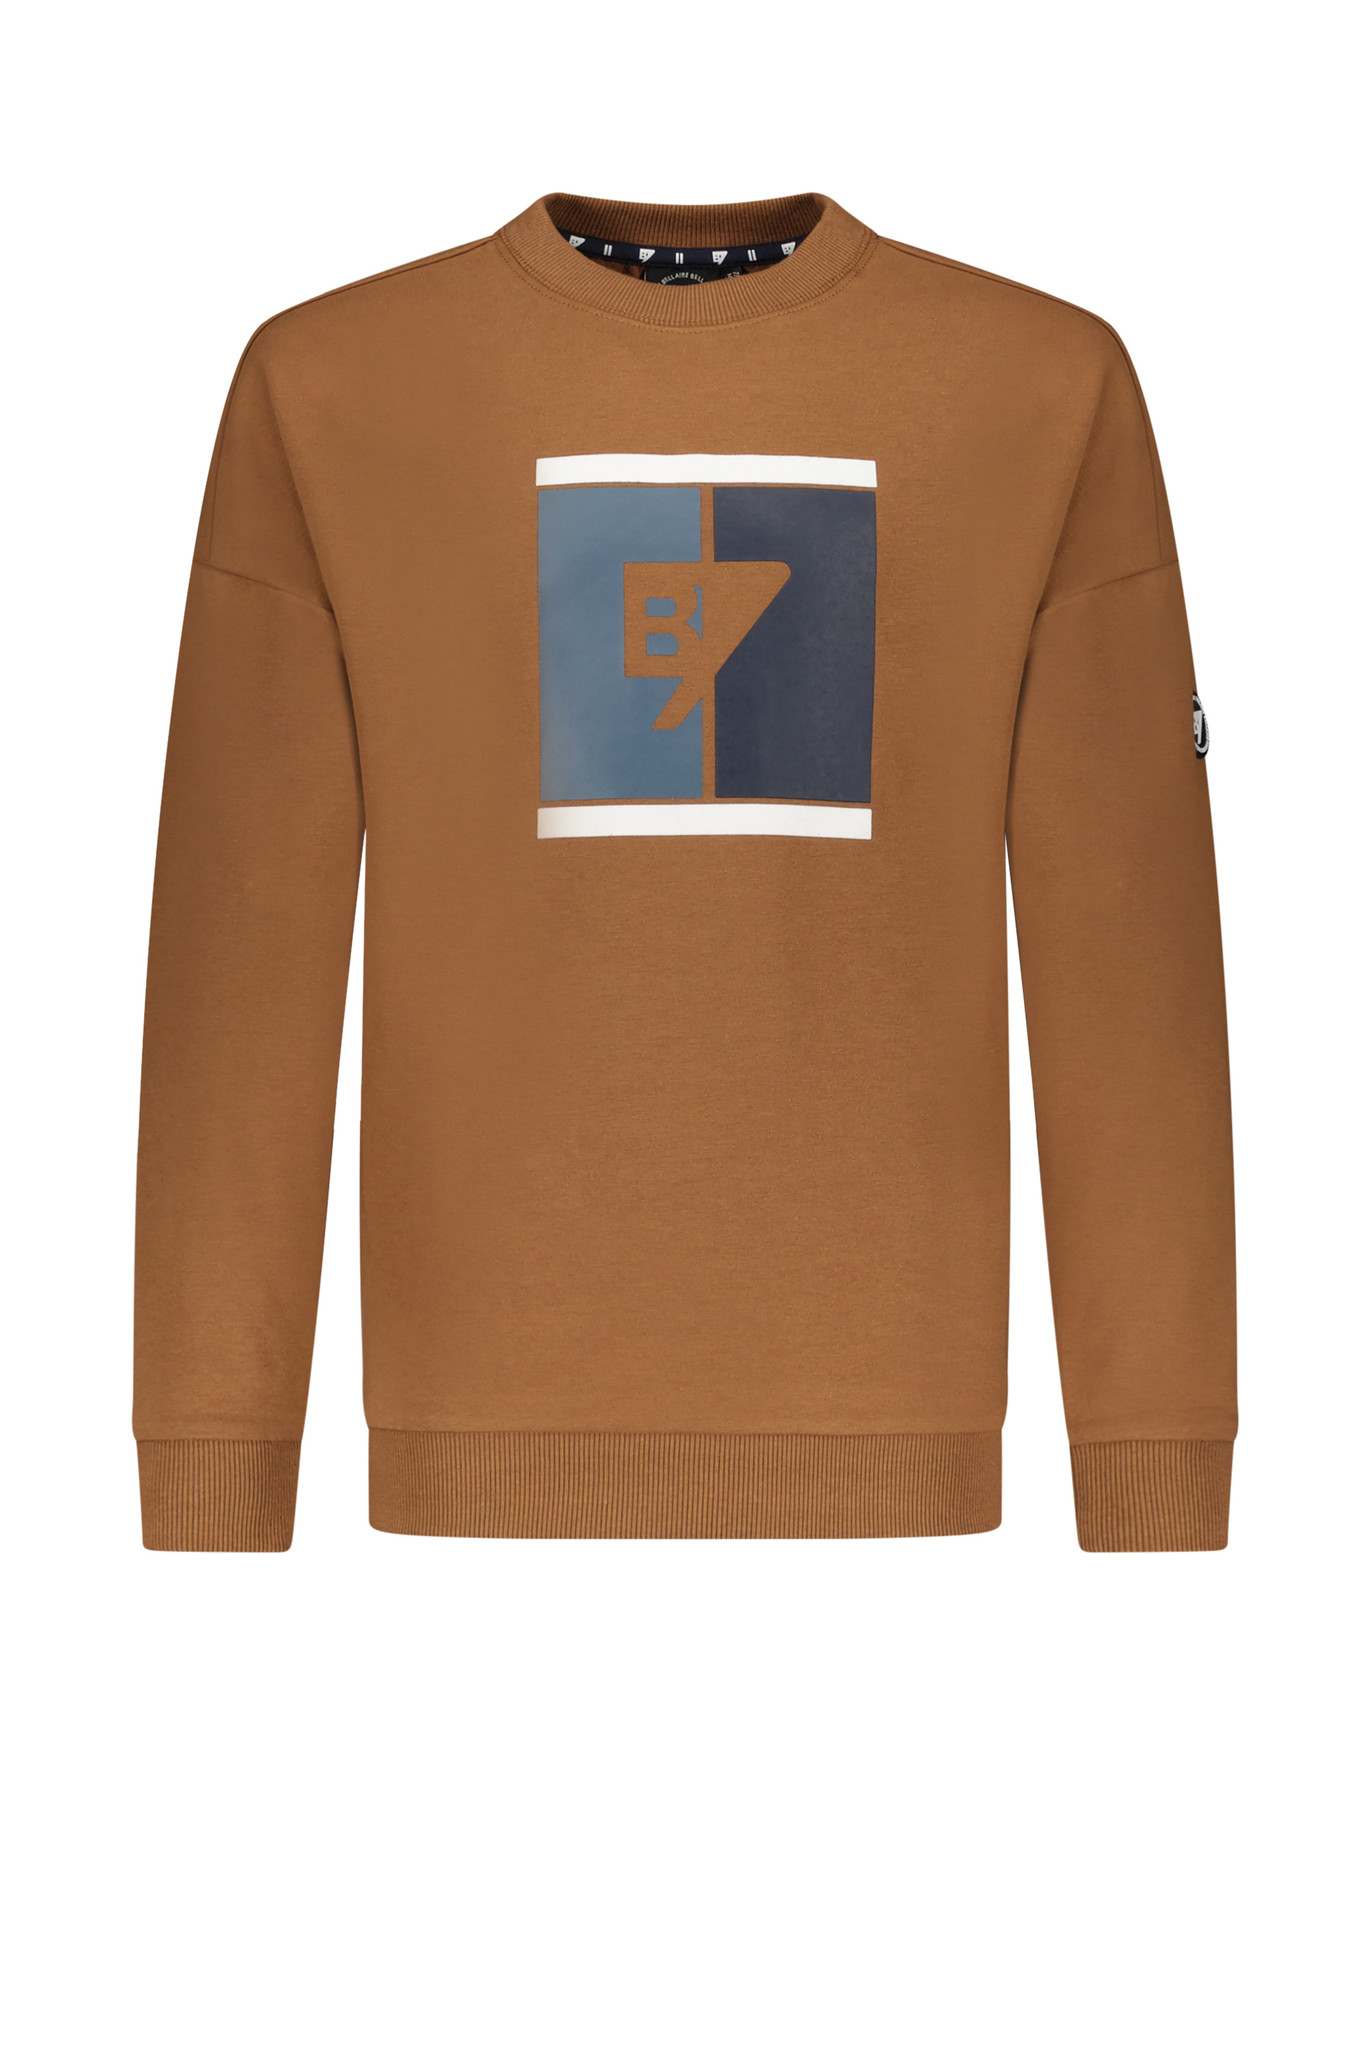 Bellaire Jongens sweater - Toffee